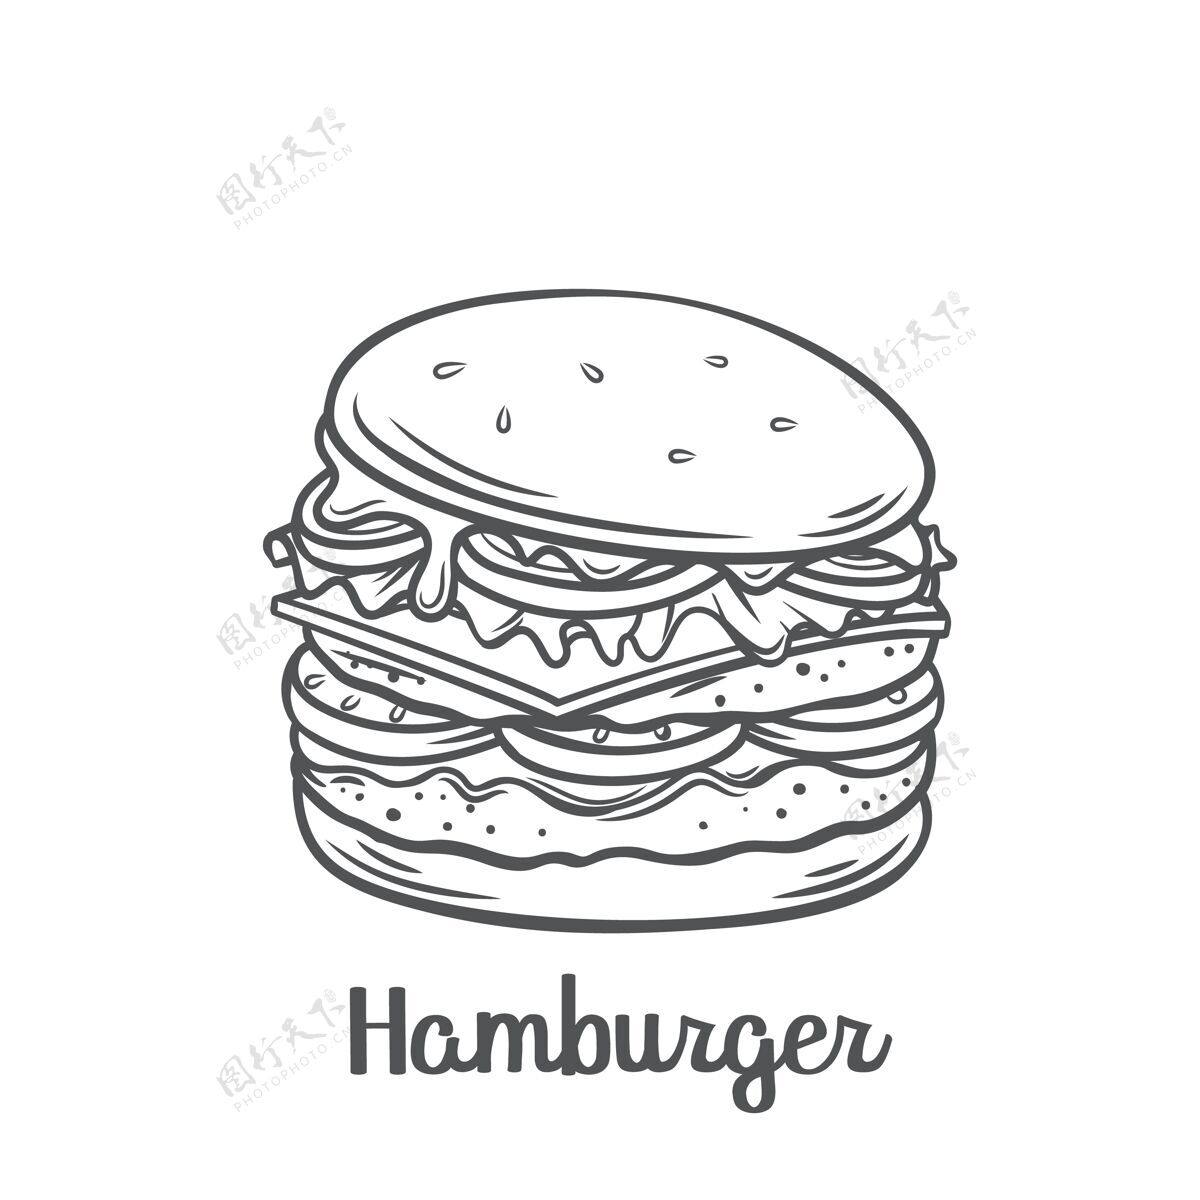 一餐汉堡包或芝士汉堡配美国国旗串图标.绘制快餐外卖餐的菜单咖啡馆设计快餐经典素描